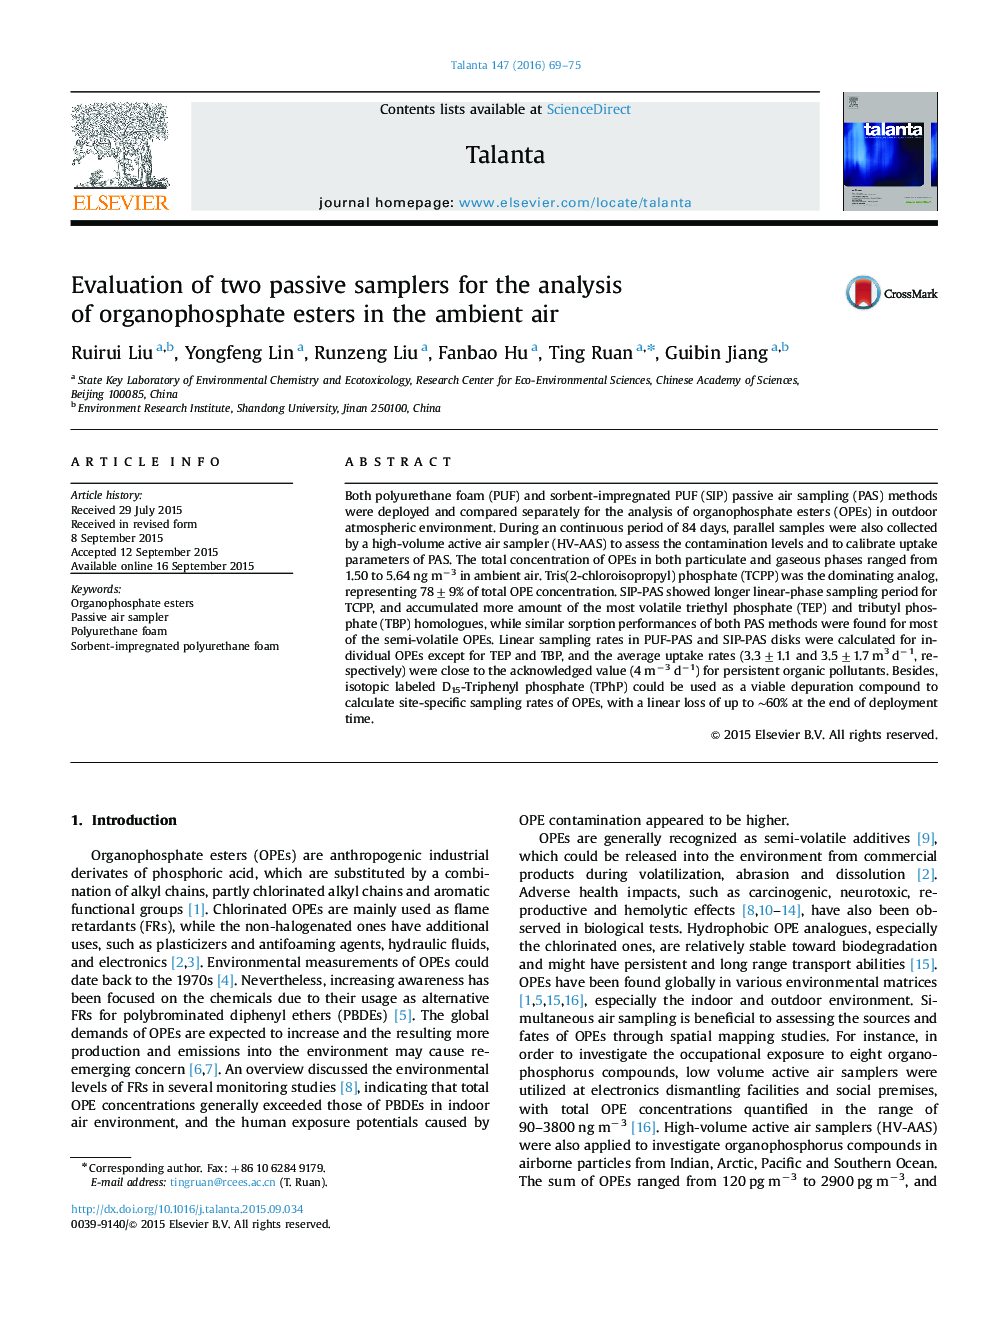 ارزیابی دو نمونه منفعل برای تجزیه و تحلیل اسیدهای ارگانوفسفره در محیط هوا 